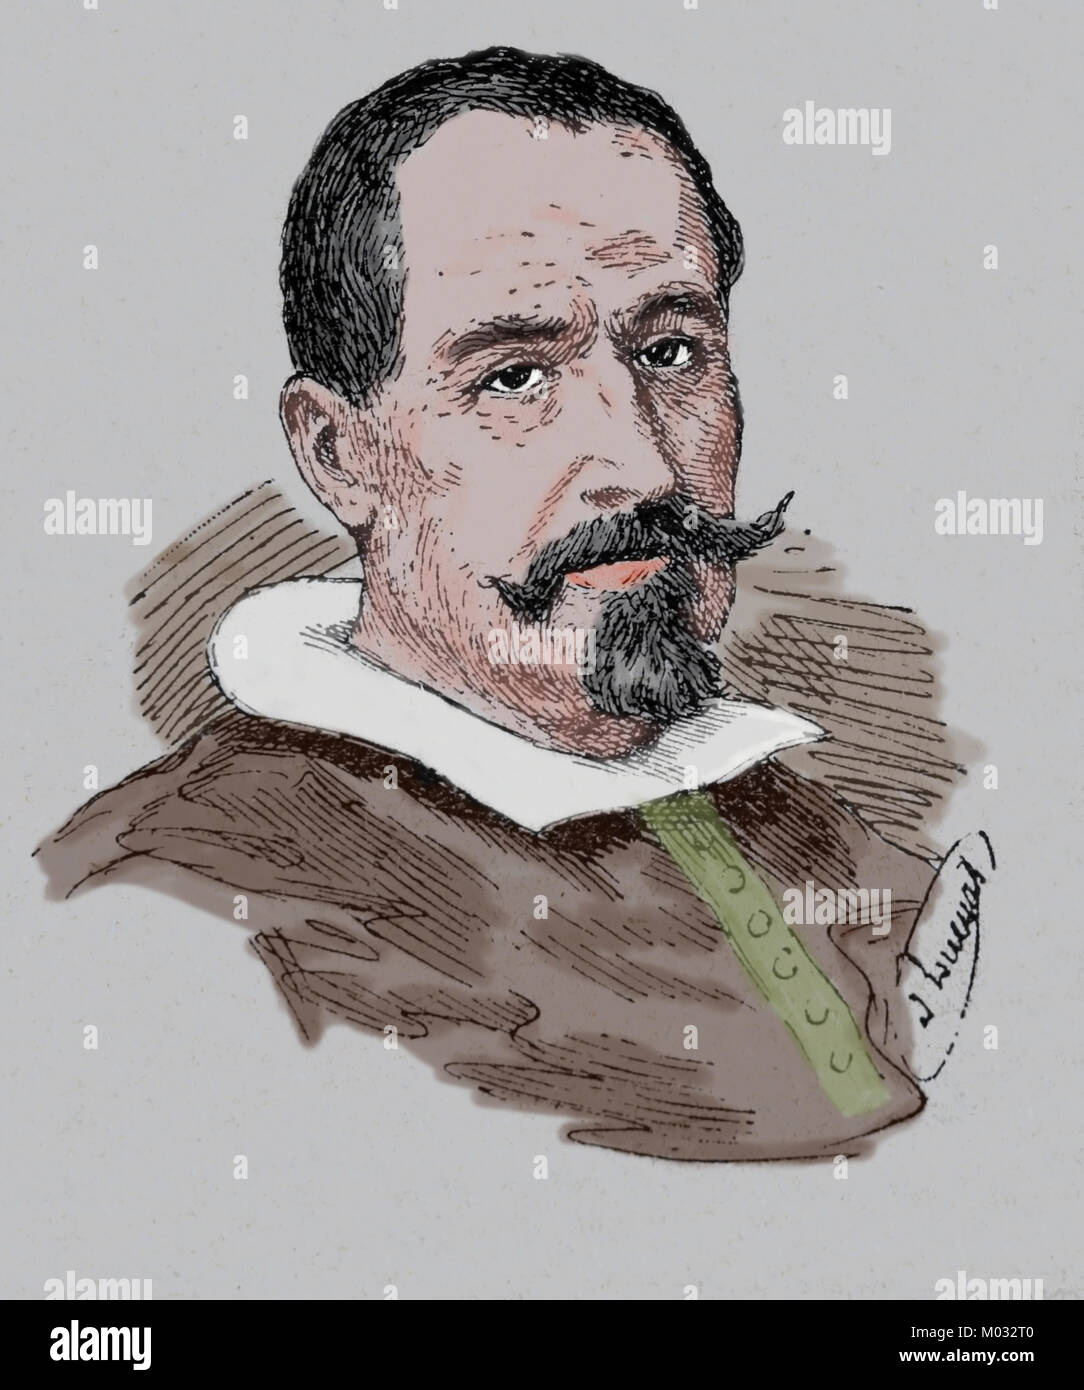 Alonzo Cano (1601-1667). Spanischer Maler, Architekt und Bildhauer. Porträt. Spanisch Gravur. Stockfoto